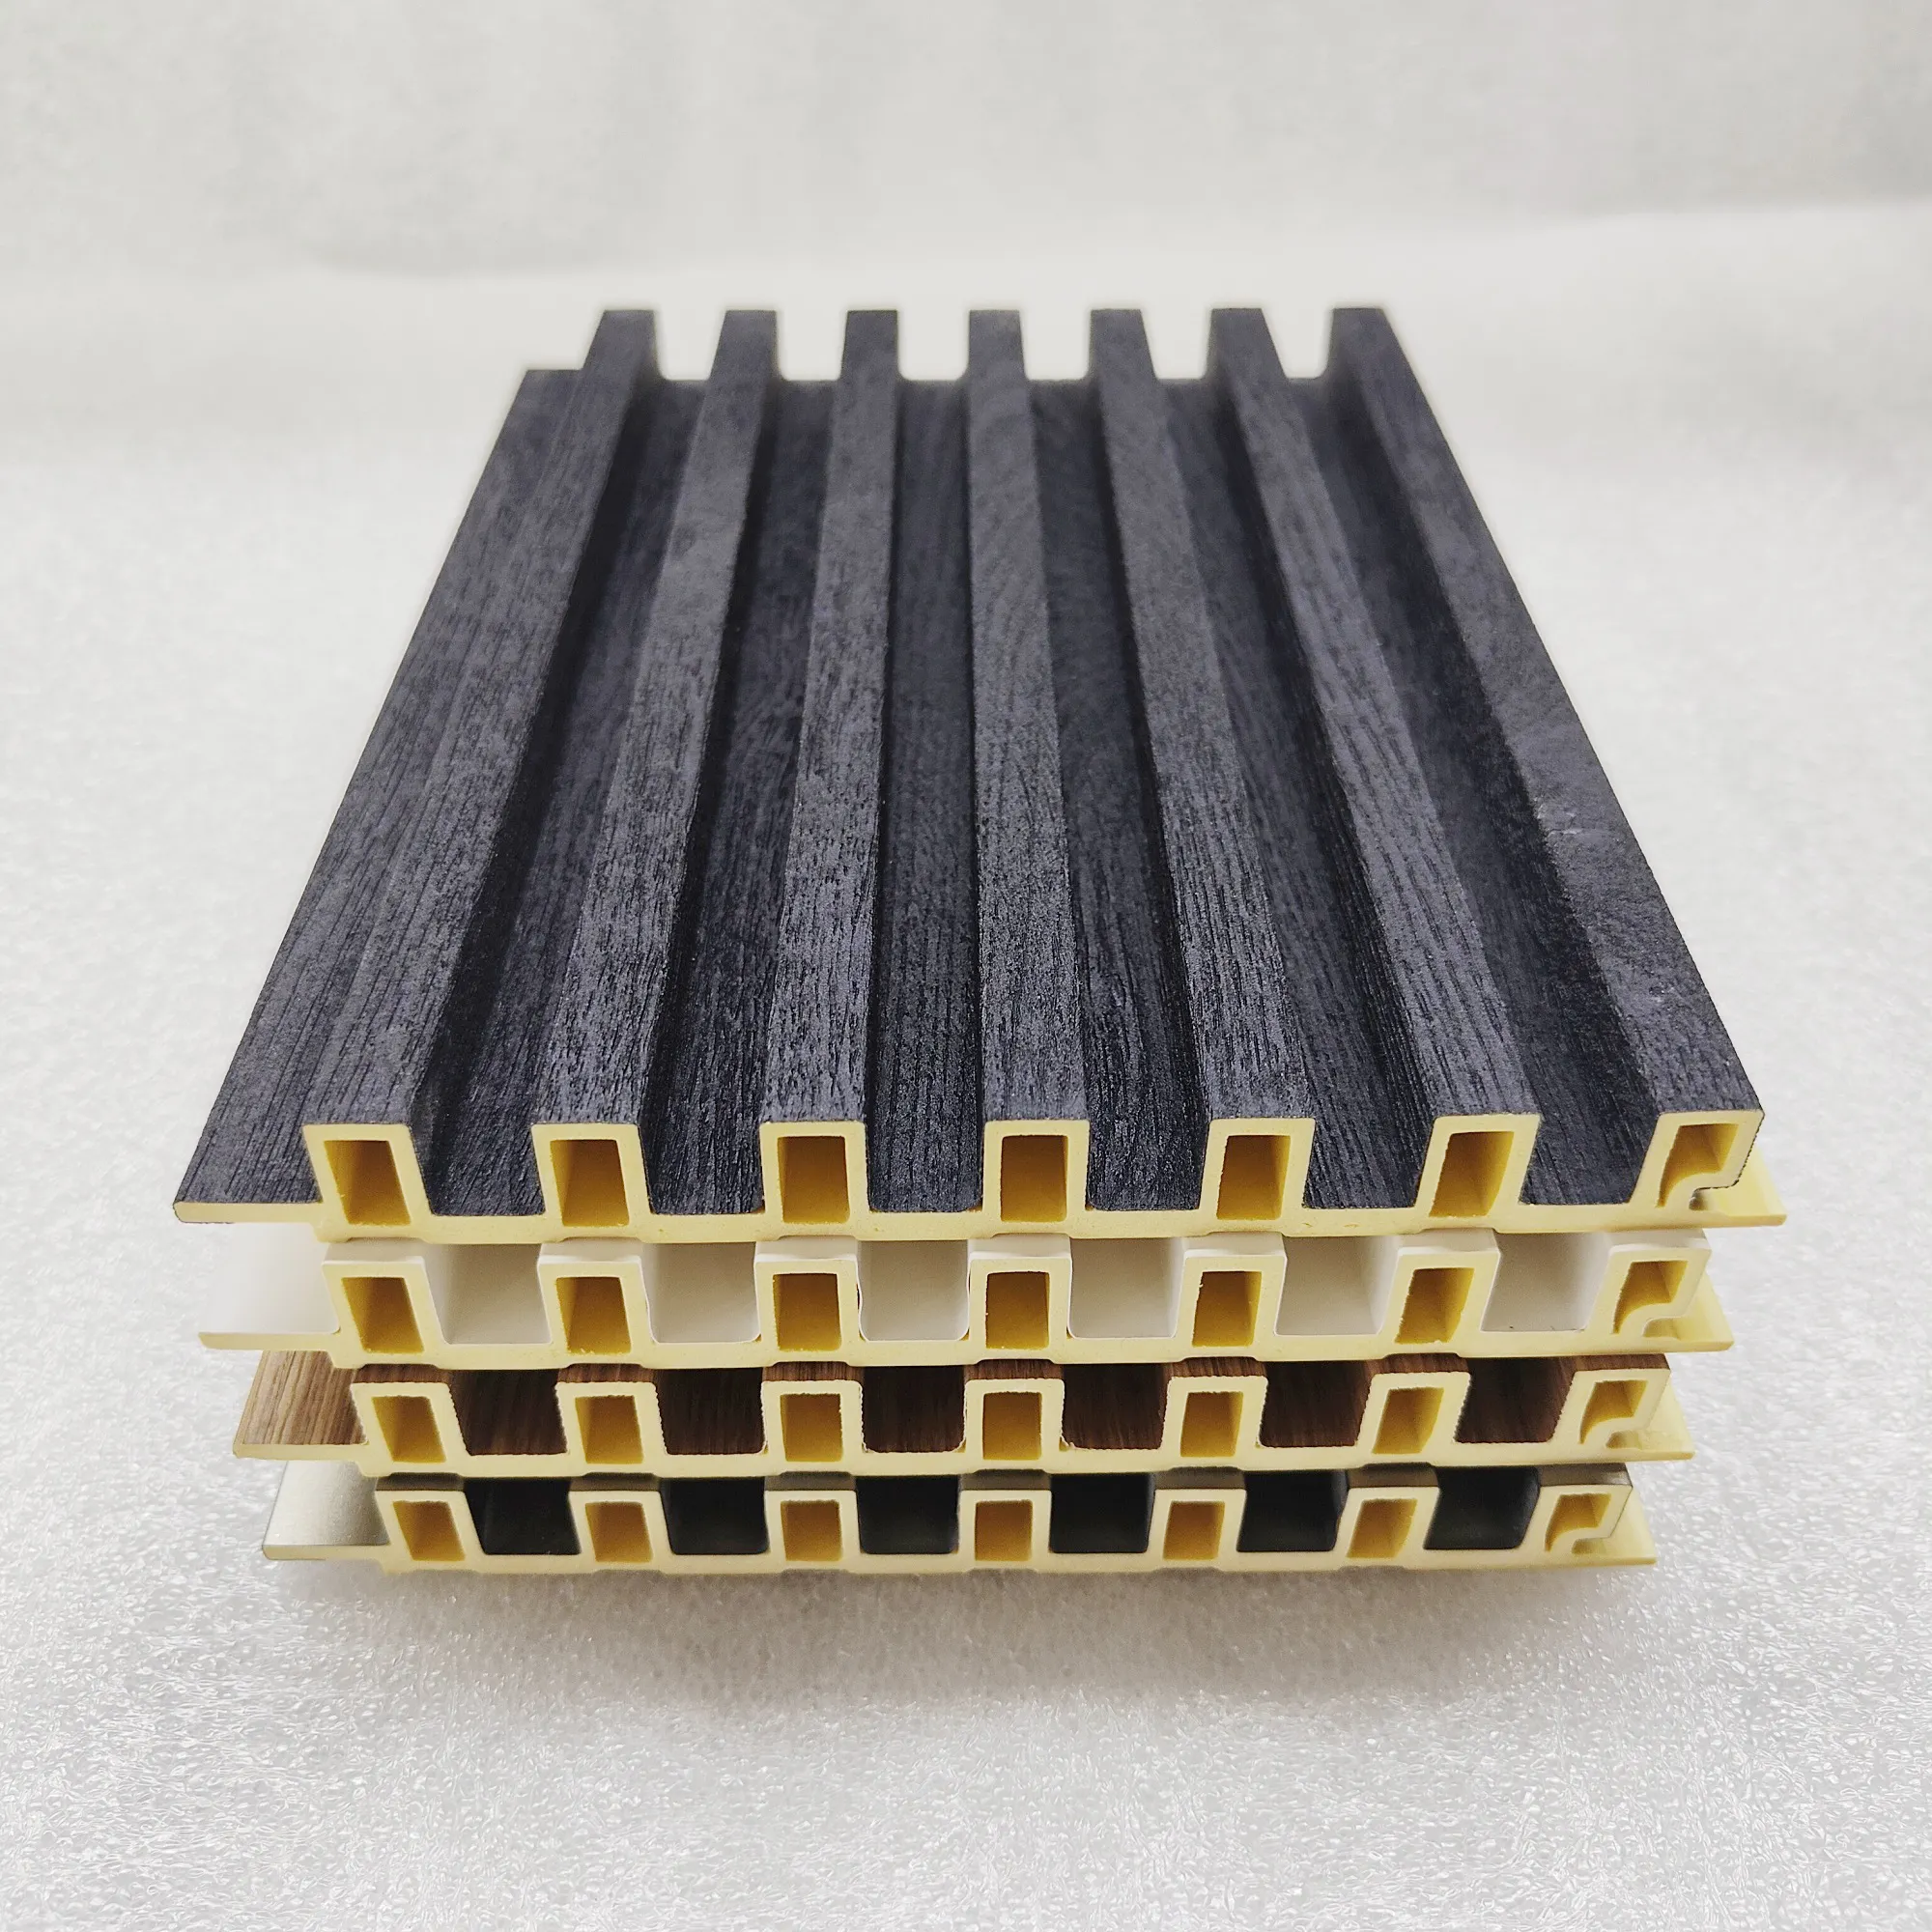 3D interior fibra de bambú PVC personalizado residencial Oficina Decoración grano de madera decoración ambiental madera plástico tablero de yeso